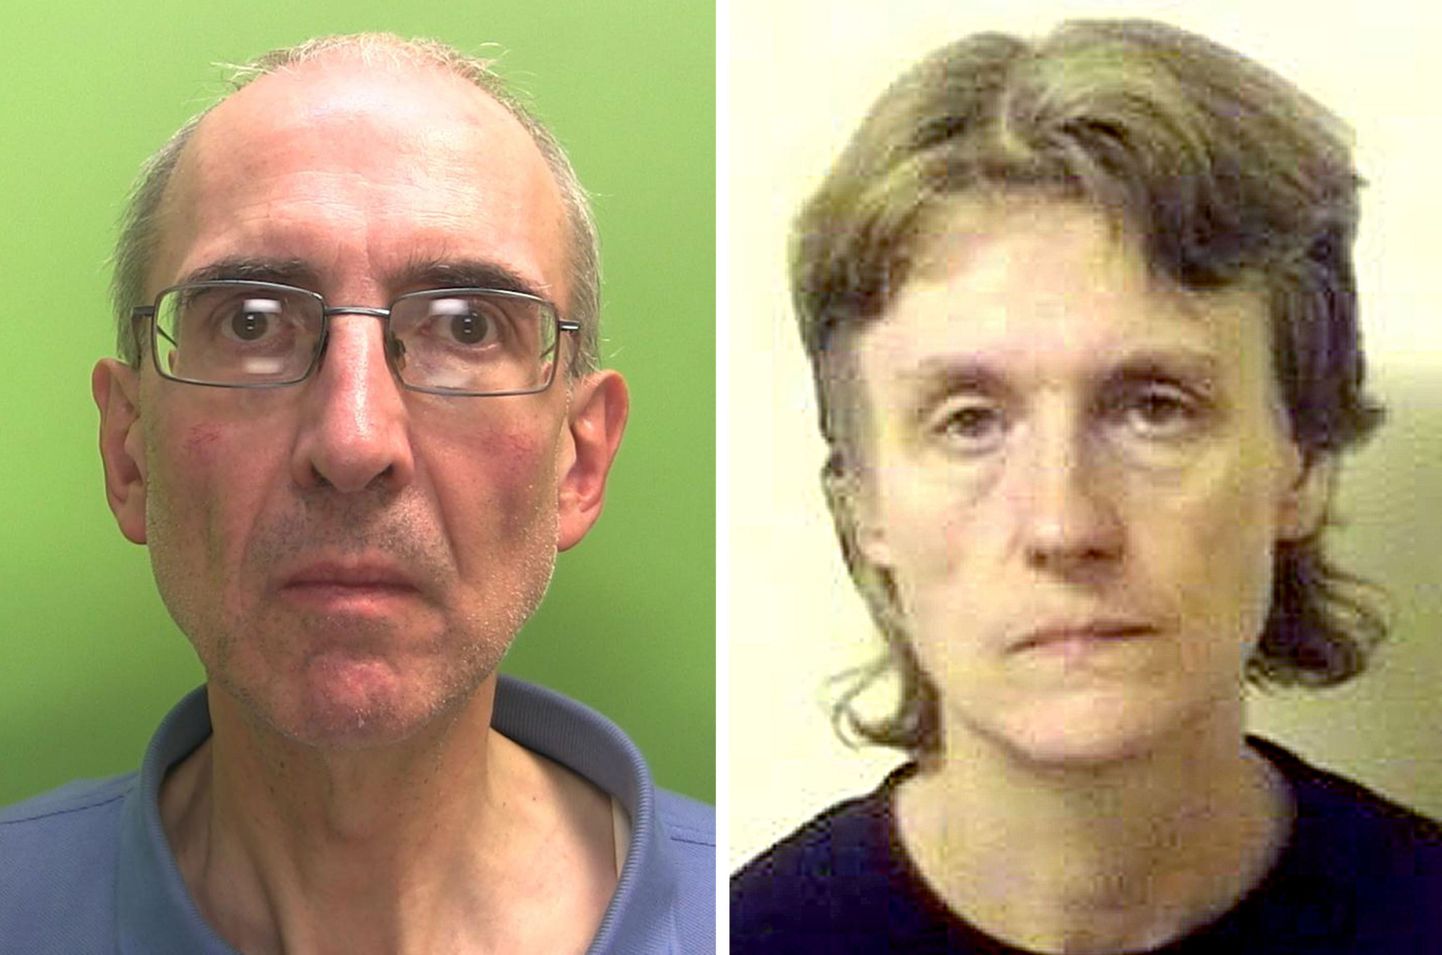 Nottinghamshire'i politsei avalikustatud fotoo on Christopher Edwards (57) ja Susan Edwards (56).